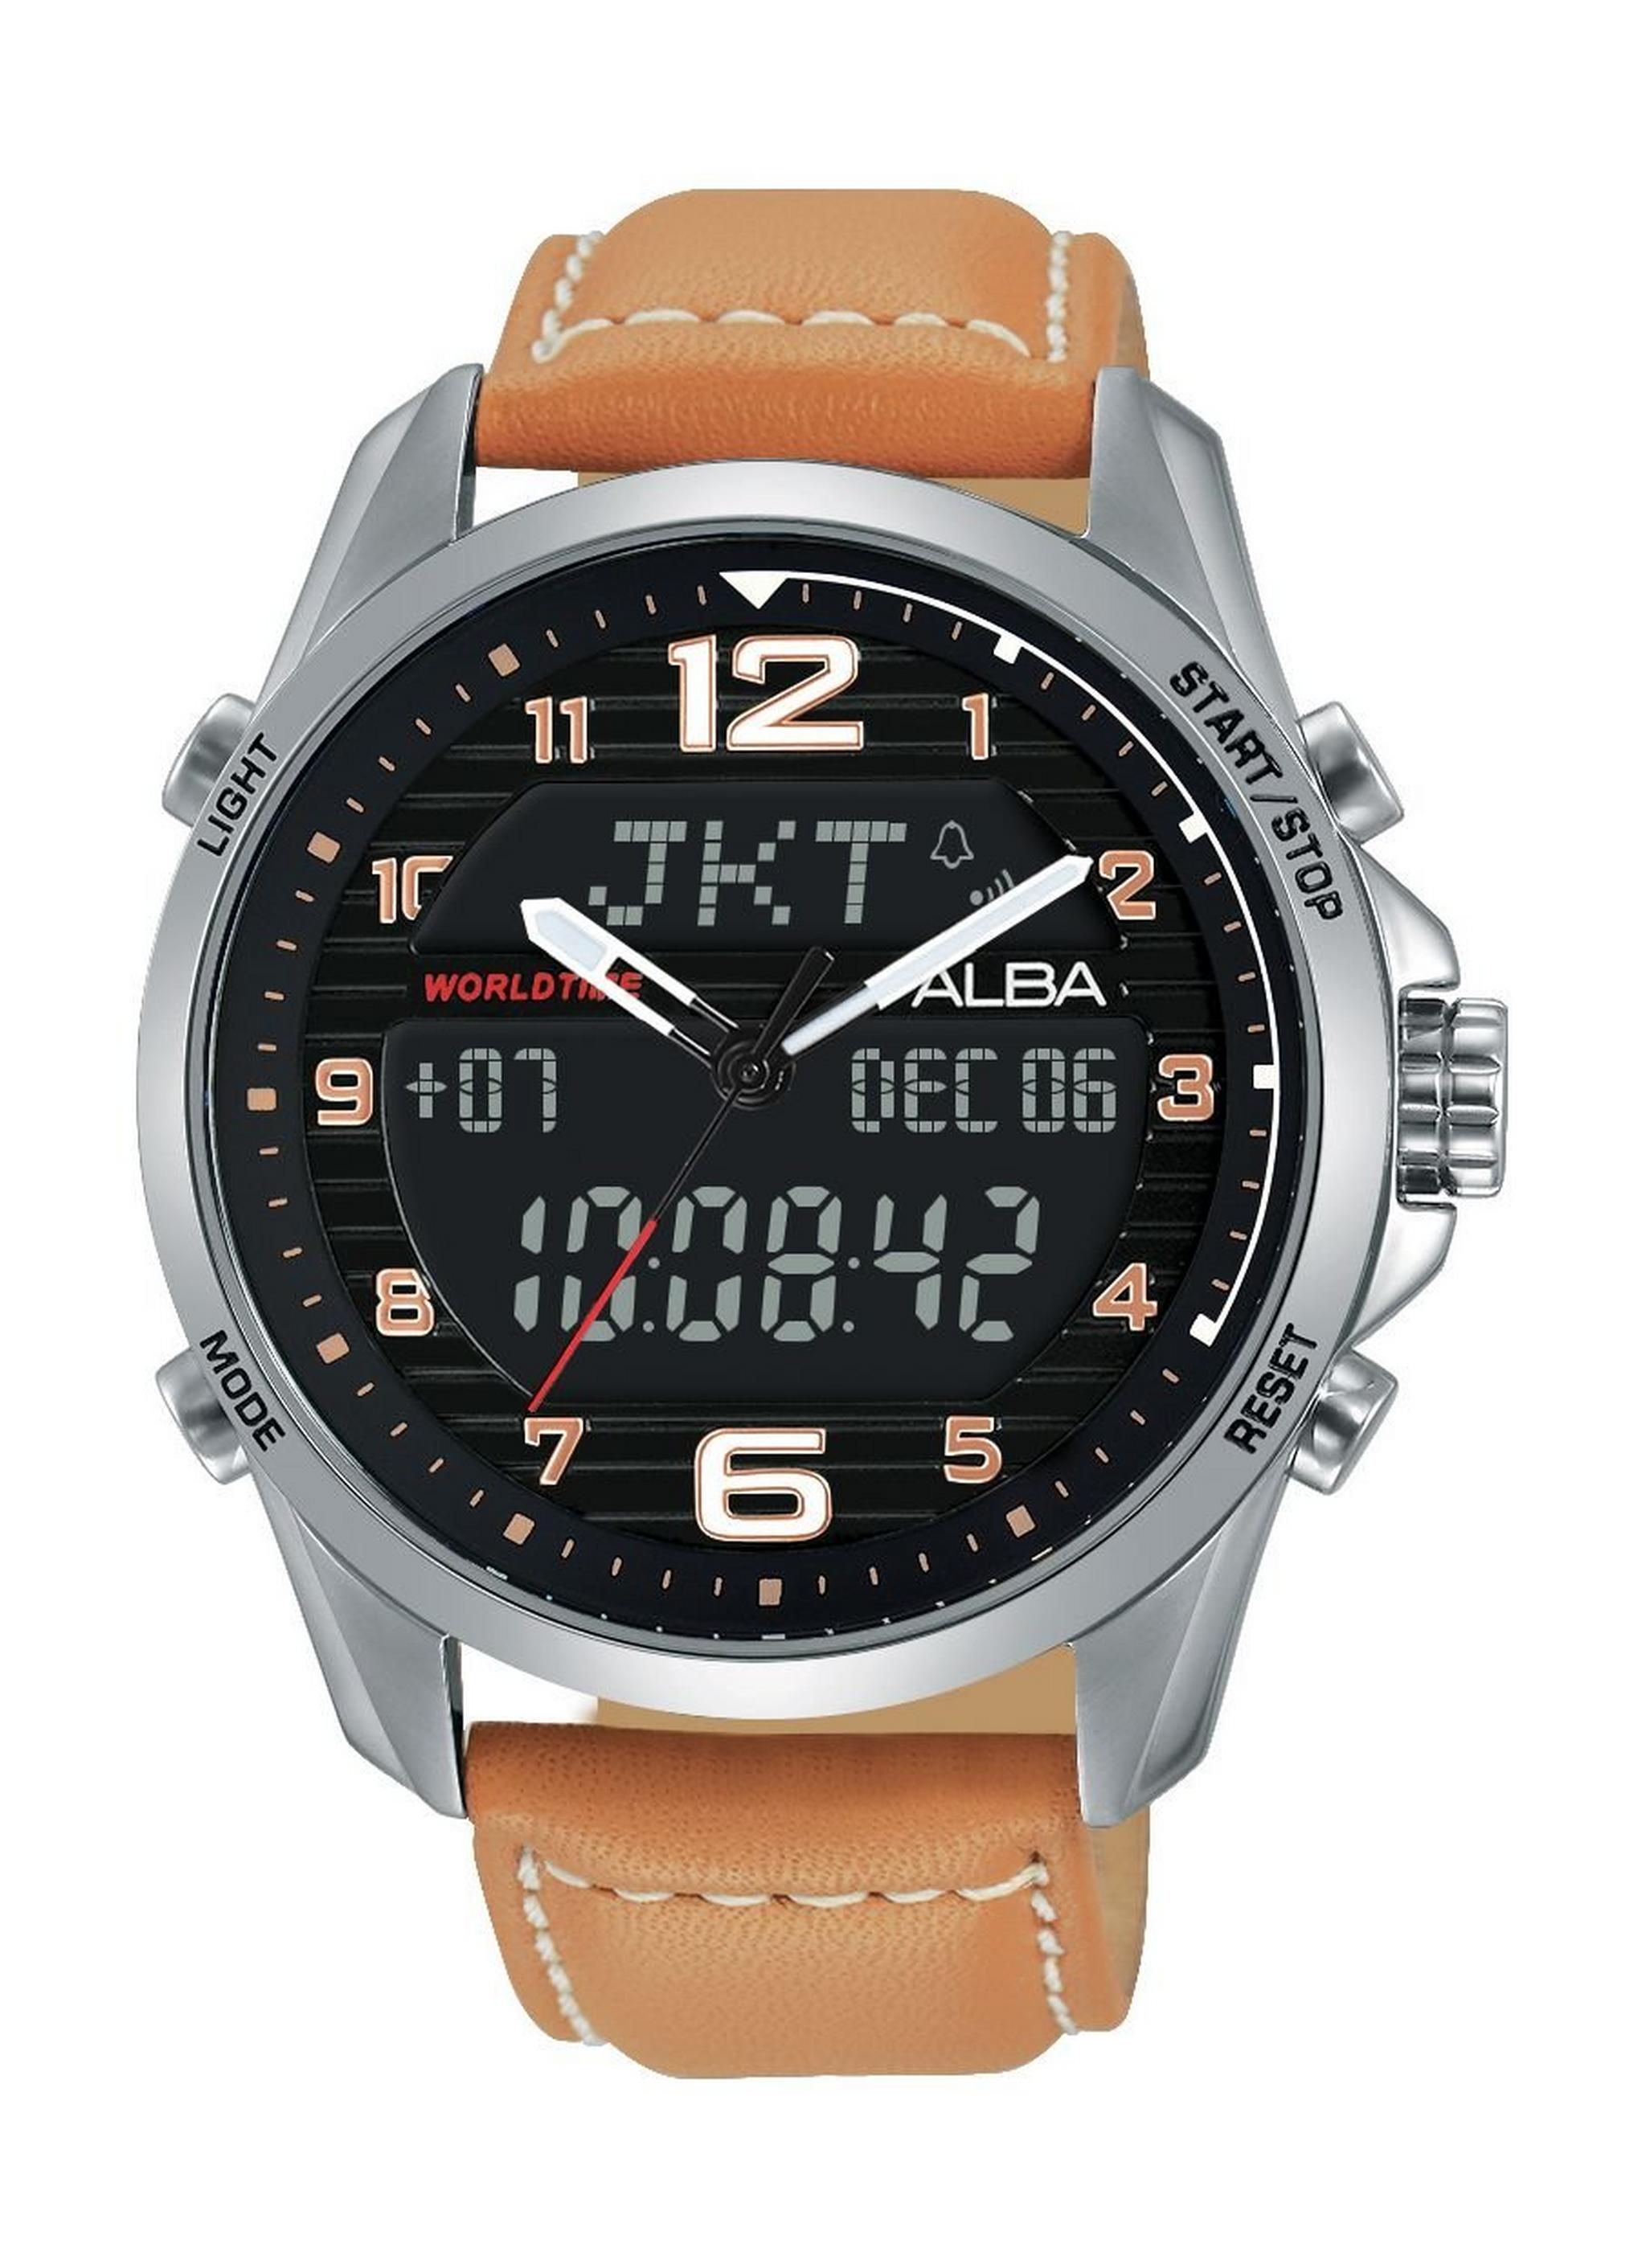 Alba AZ4013X1 Gents Sport Analog Digital Leather Watch - Brown